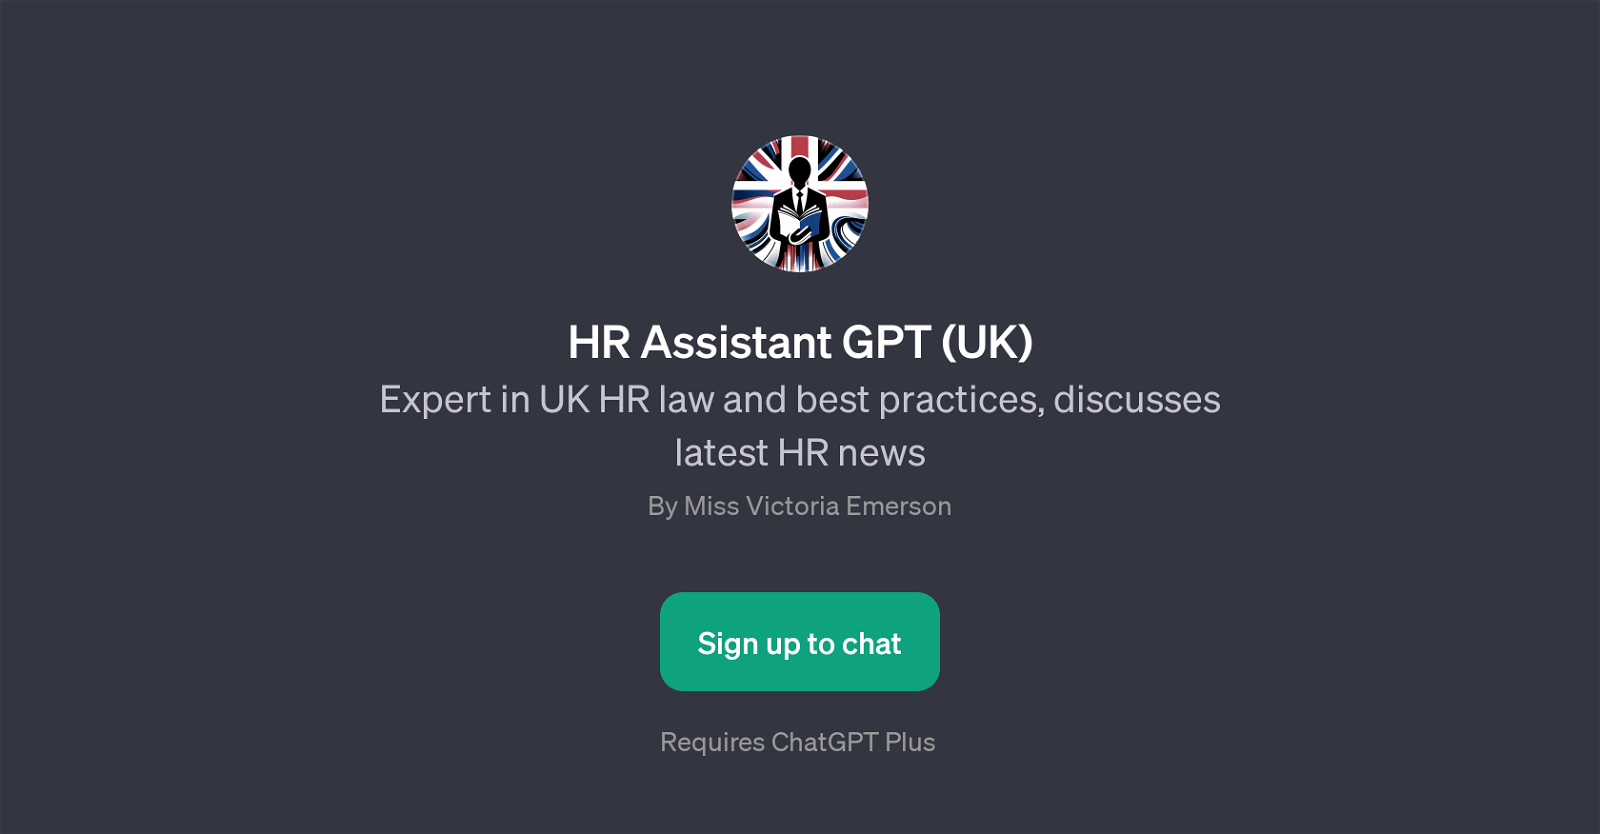 HR Assistant GPT (UK) website